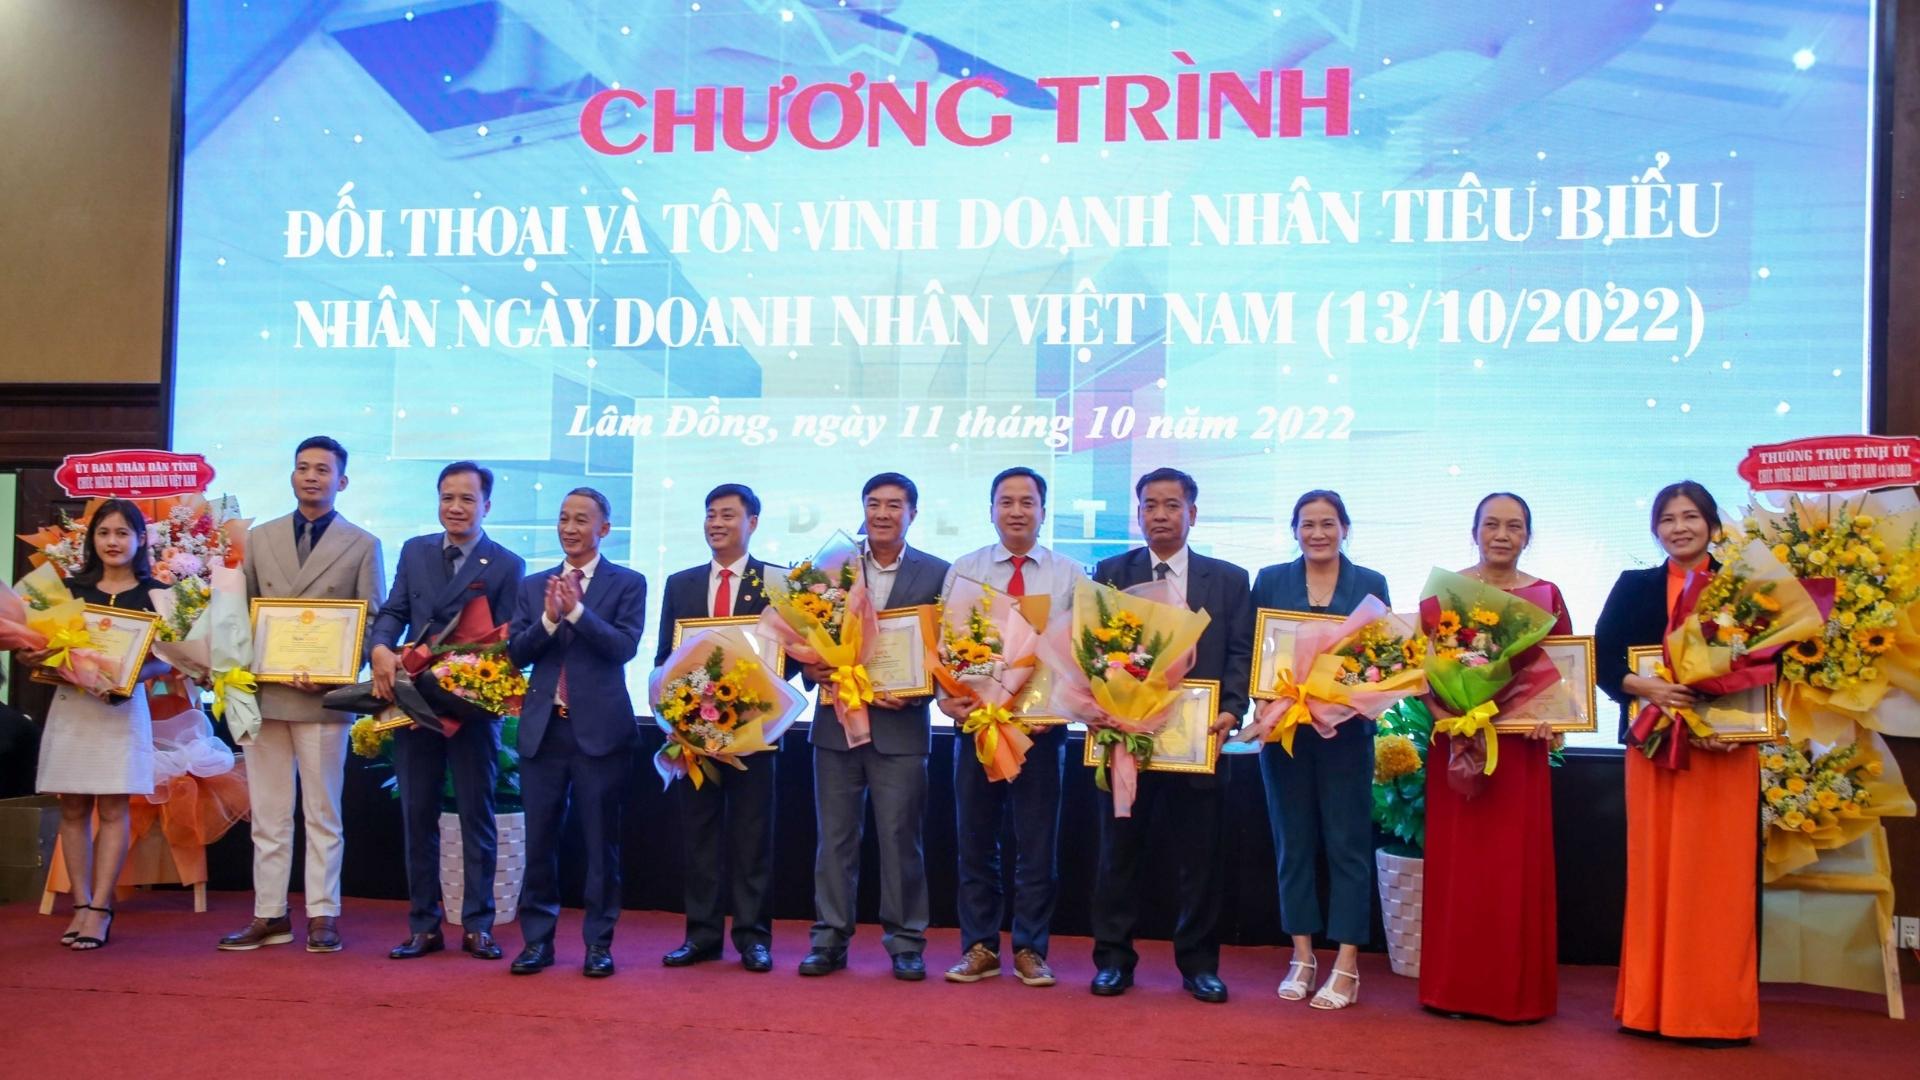 Đón nhận bằng khen Doanh nhân tiêu biểu của UBND tỉnh Lâm Đồng năm 2022